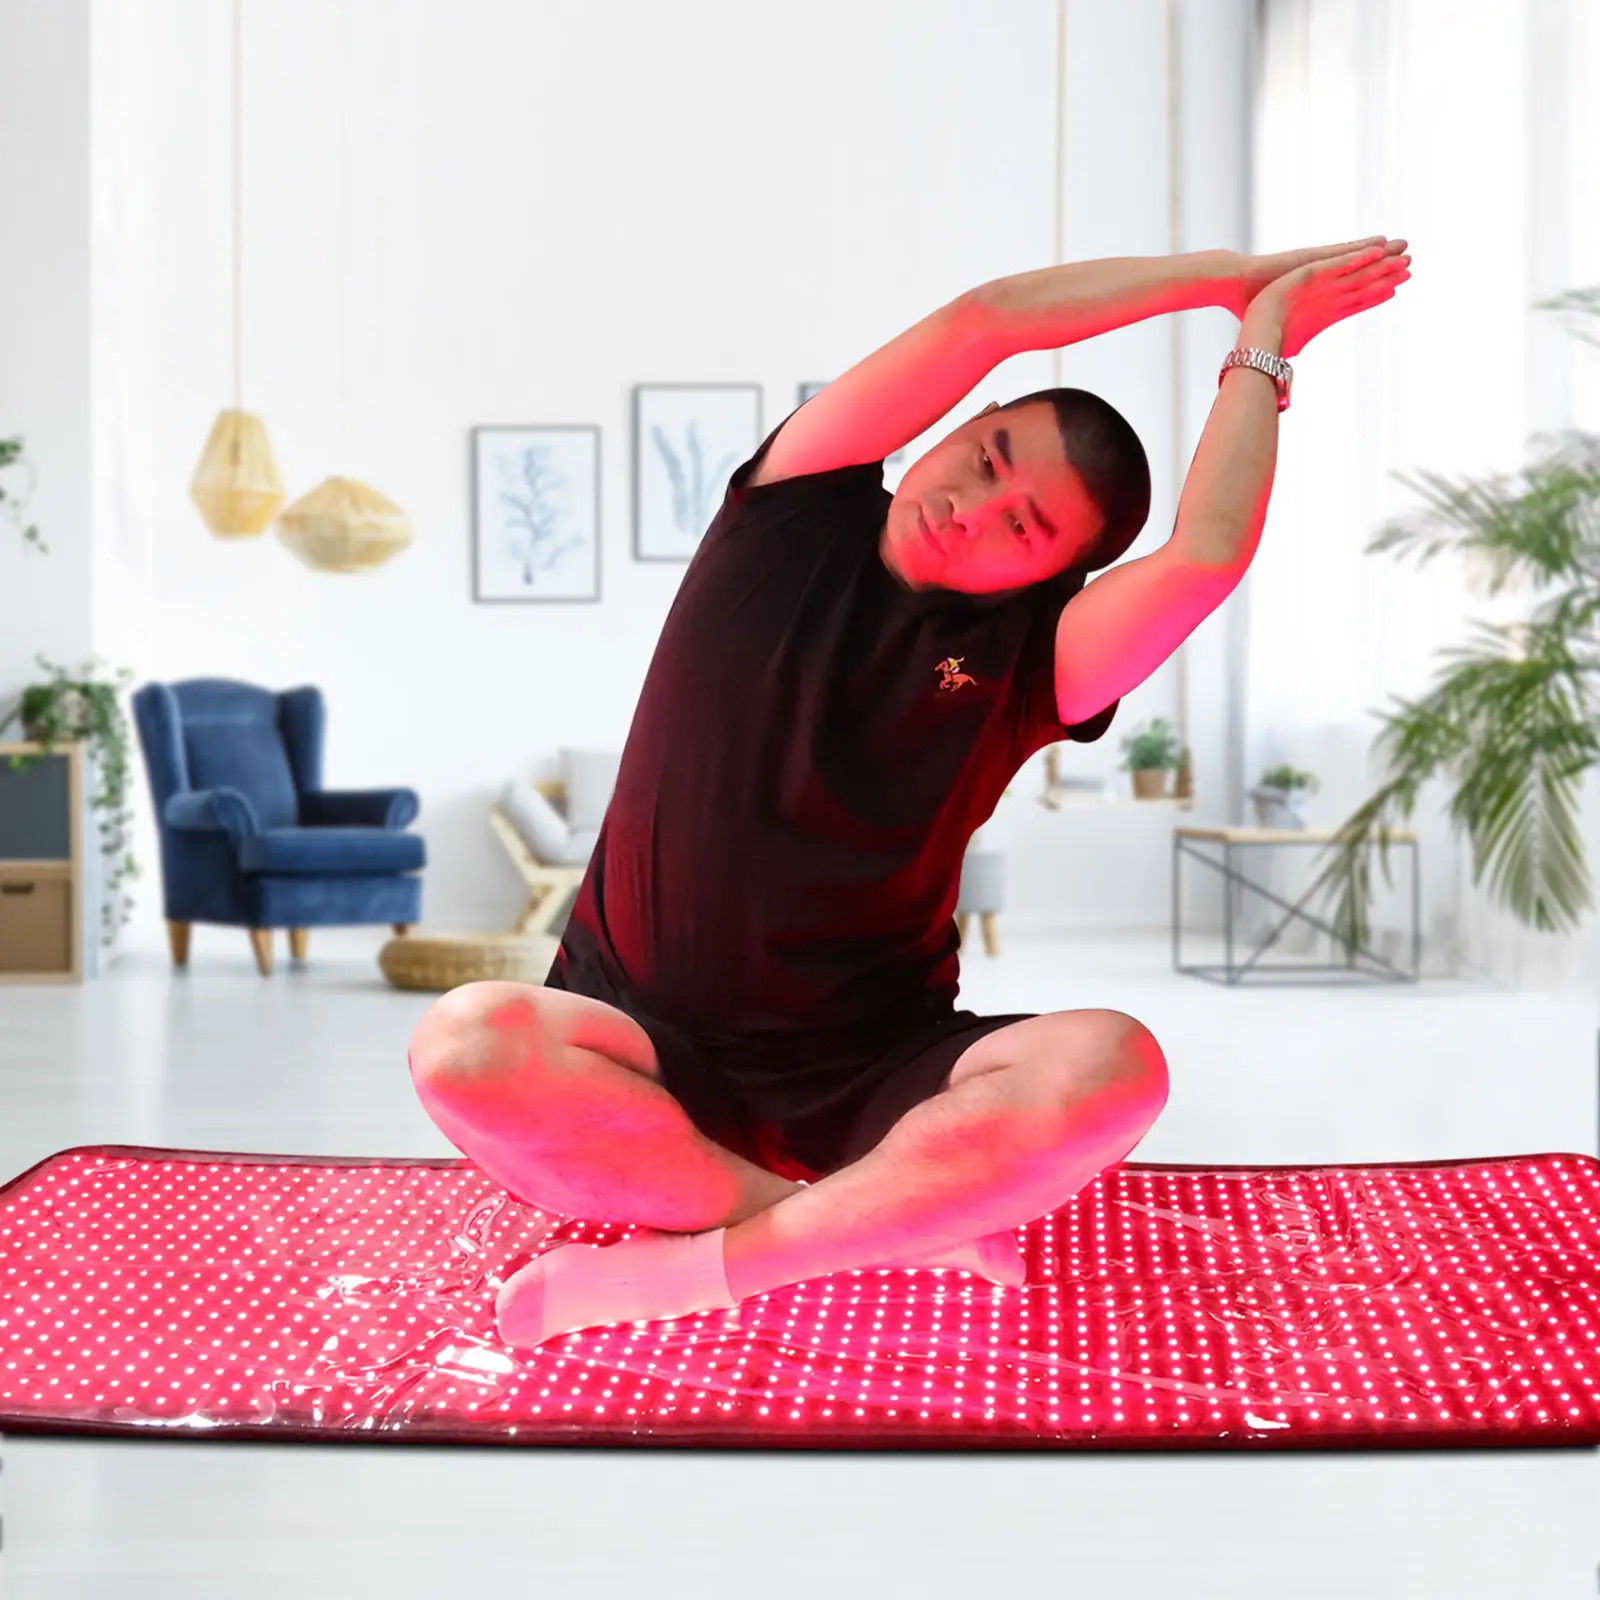 빨간 가벼운 매트 가정 사용 아름다움 장비 큰 Led 가벼운 치료 패드 적외선 침대를 구호하십시오